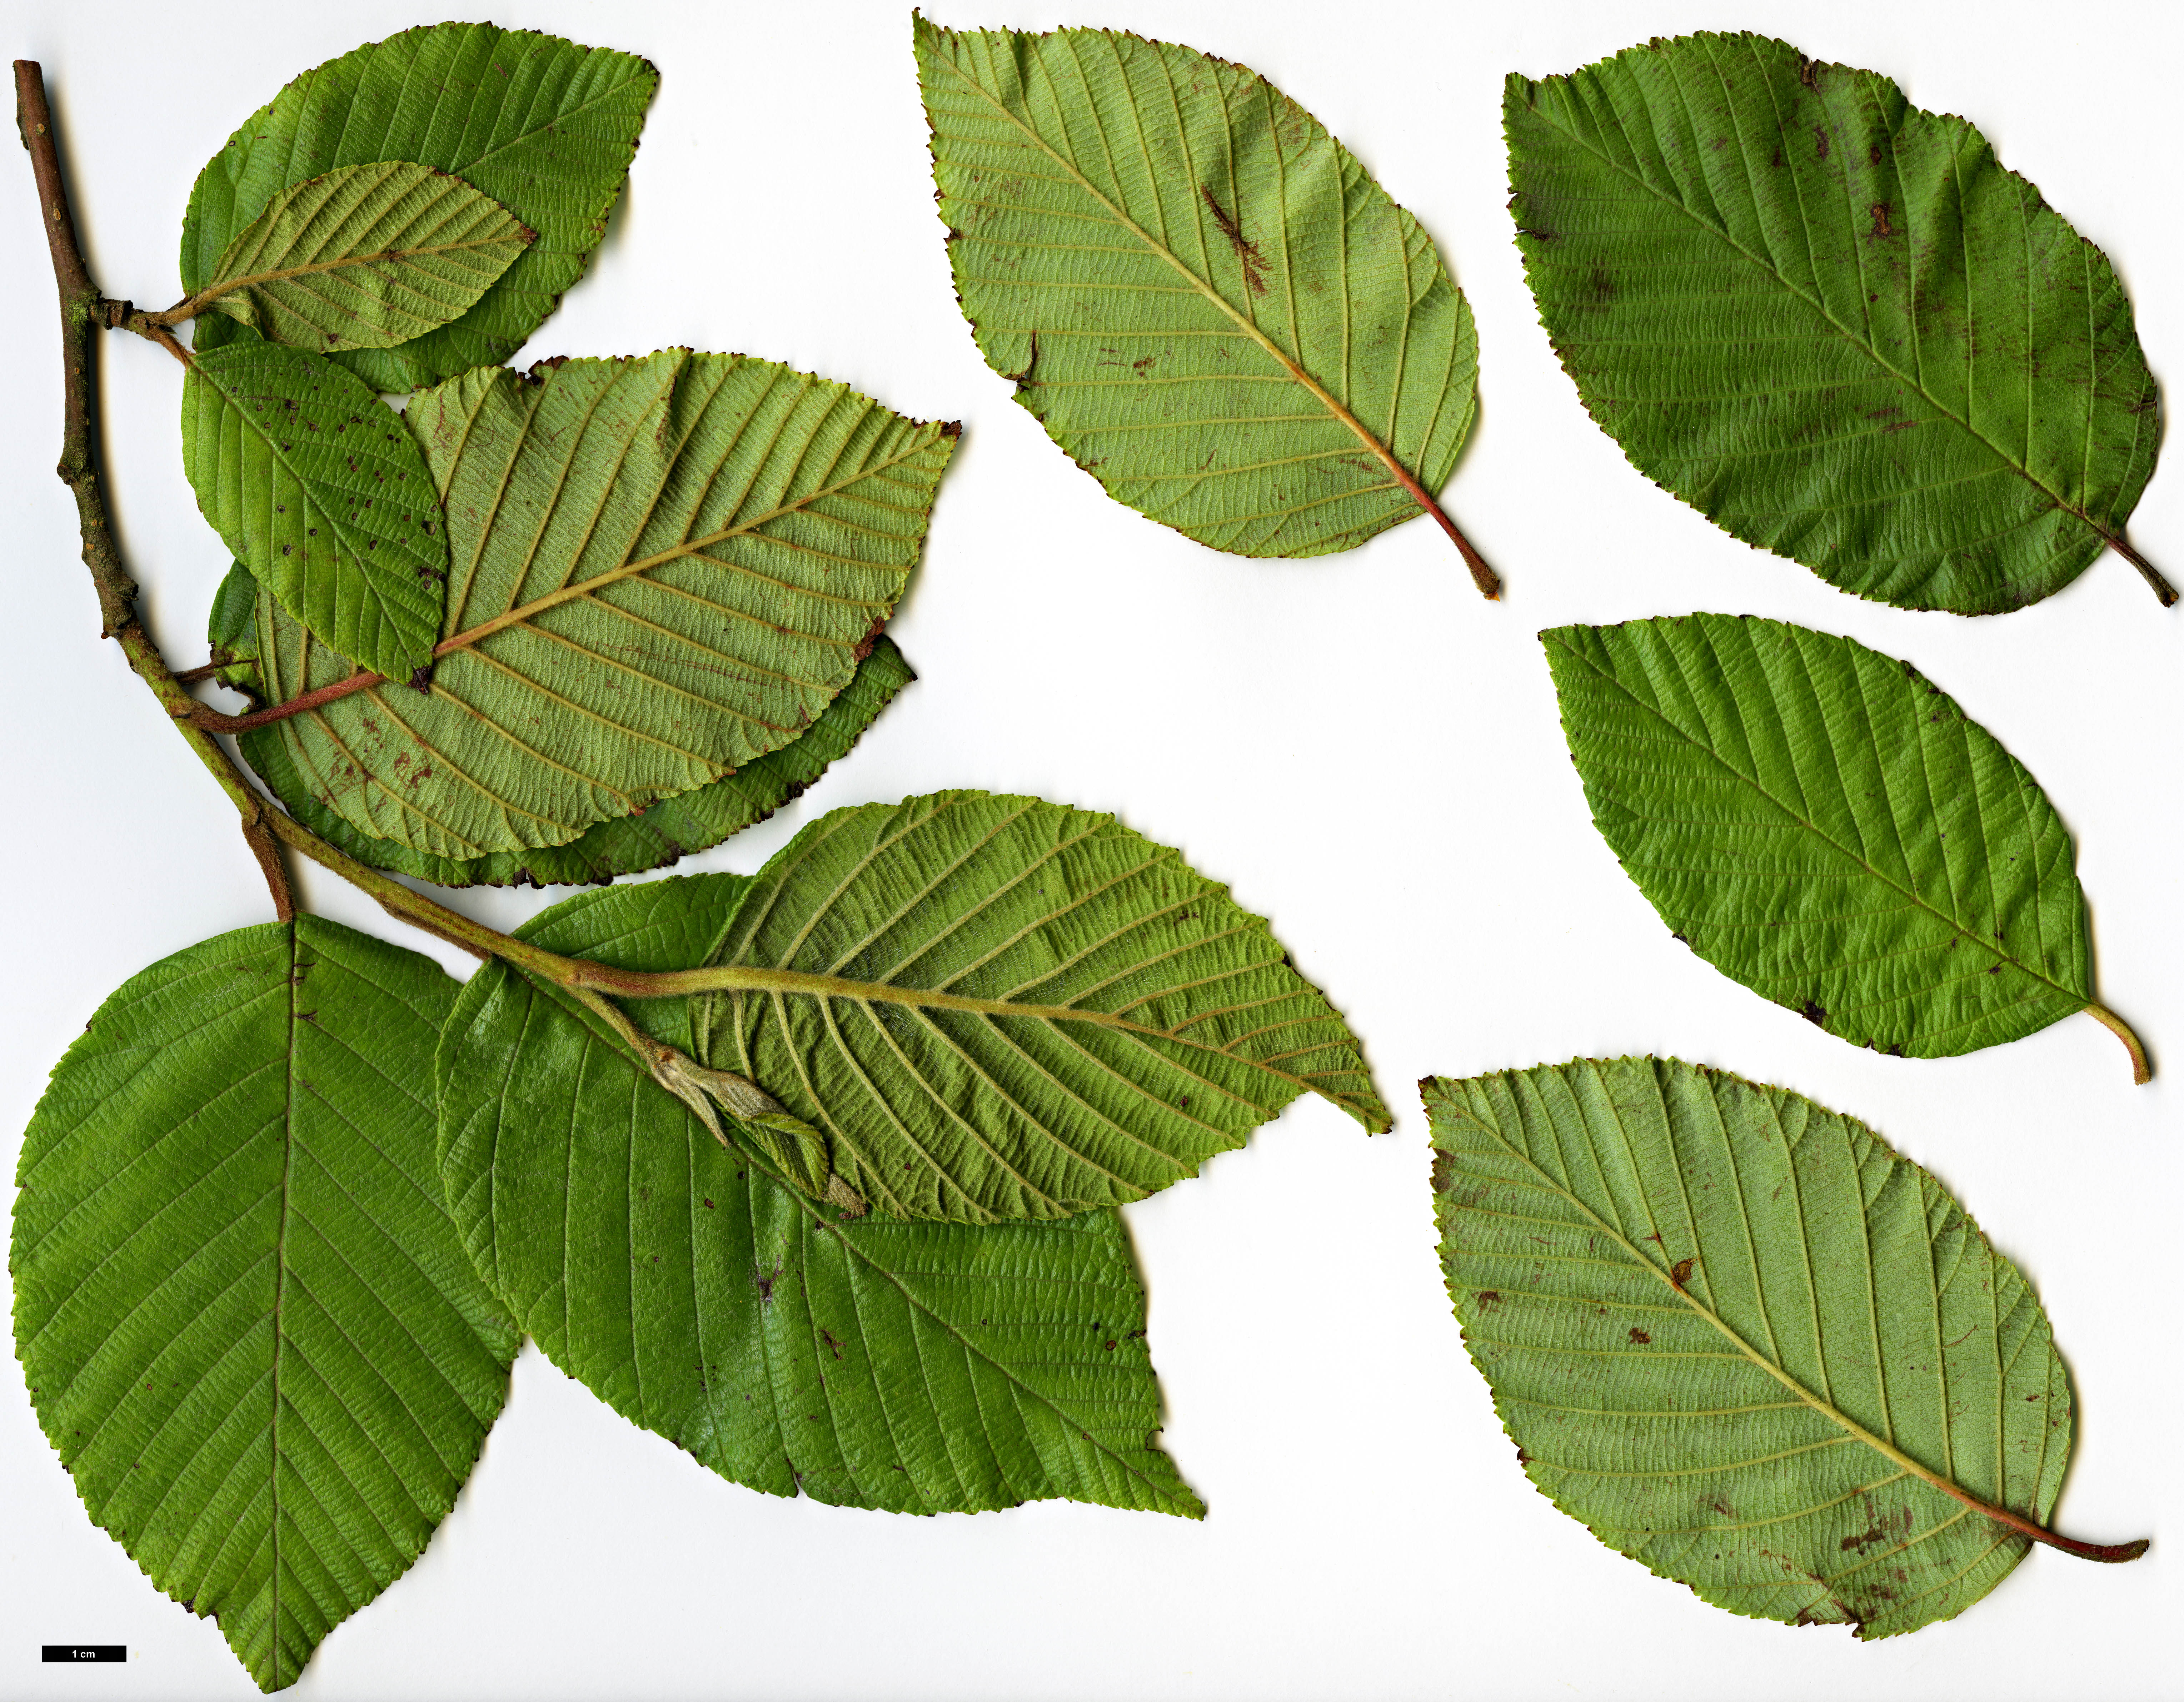 High resolution image: Family: Betulaceae - Genus: Alnus - Taxon: acuminata - SpeciesSub: subsp. acuminata